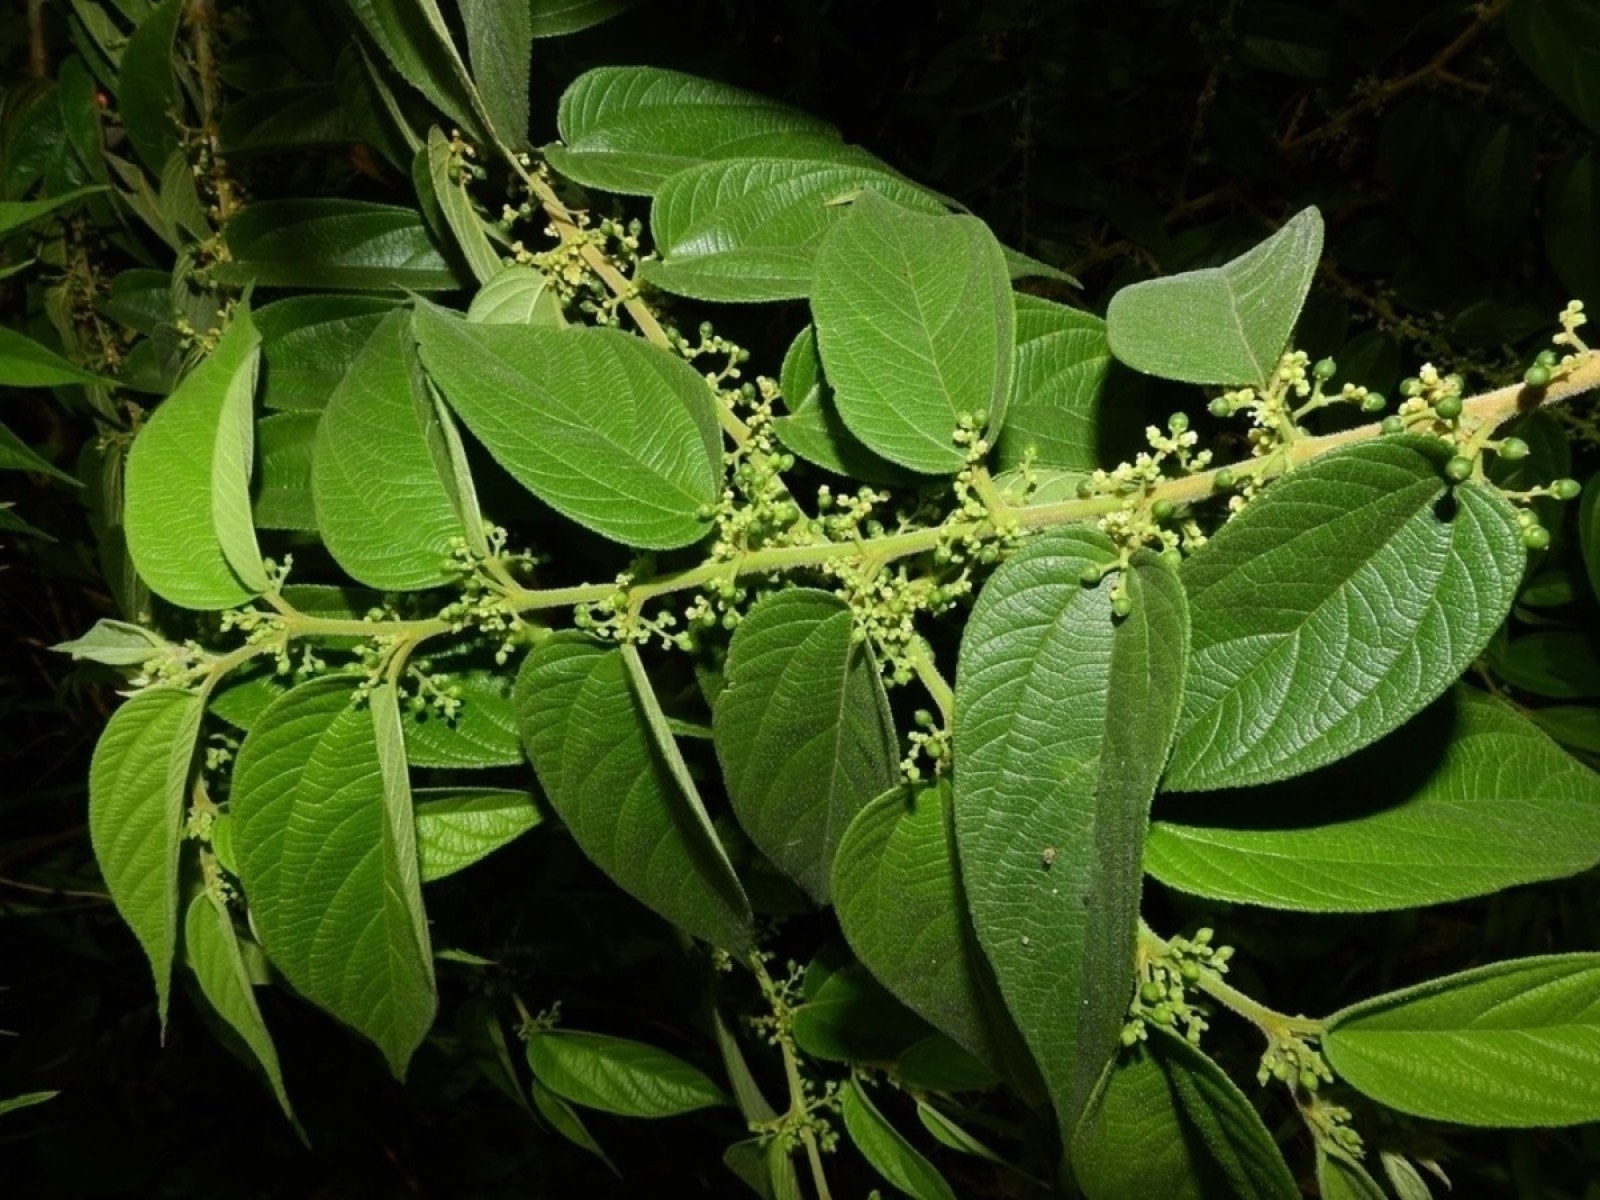 Pesquisa da UFRJ identifica canabidiol em planta nativa brasileira